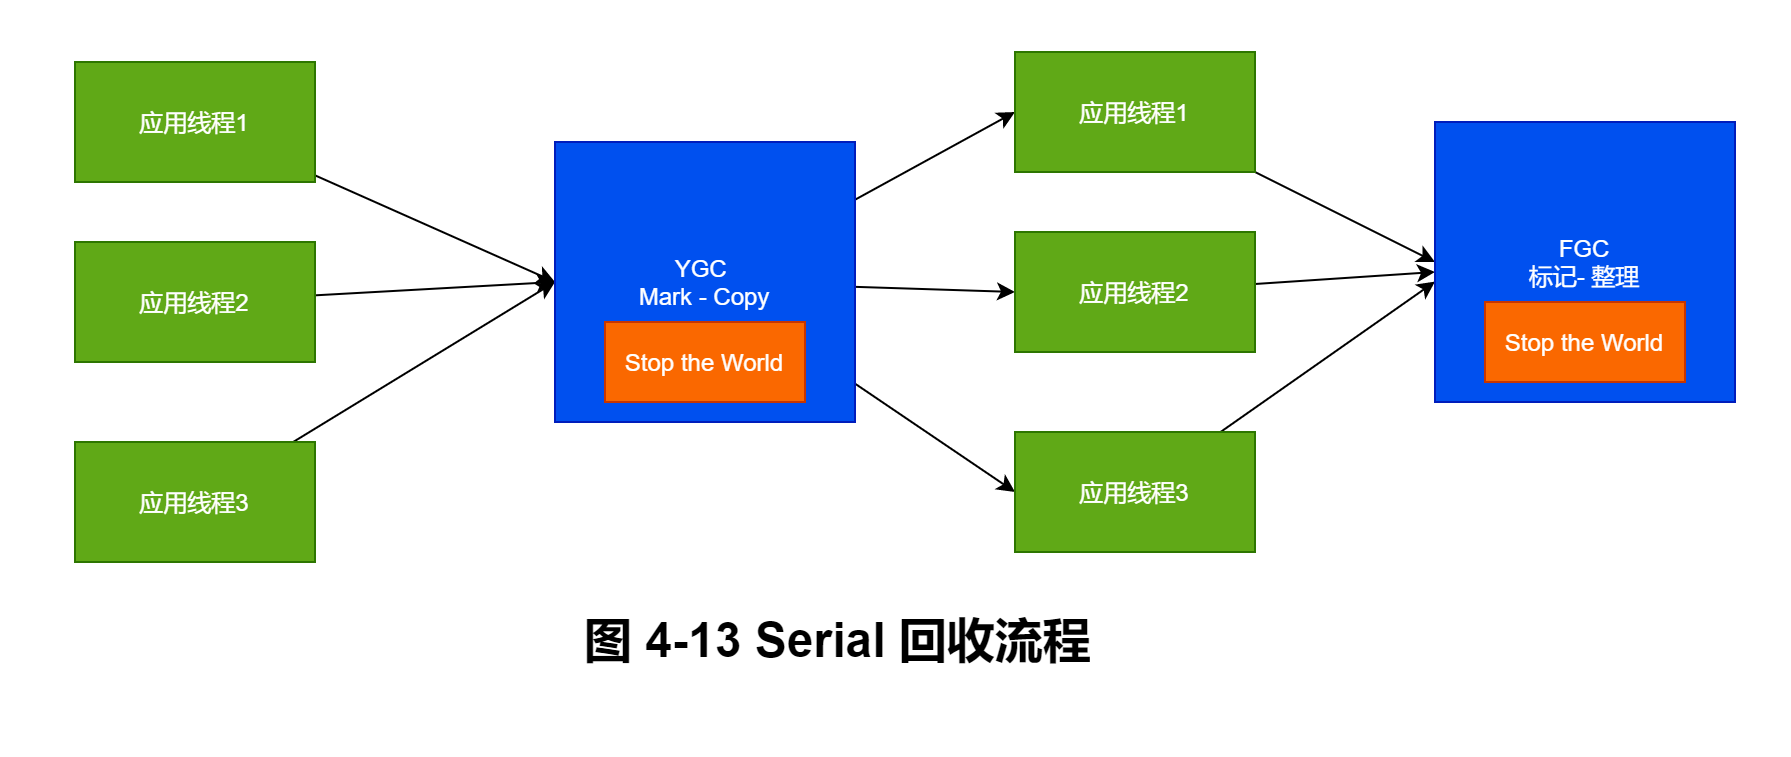 图 4-13 Serial 回收流程